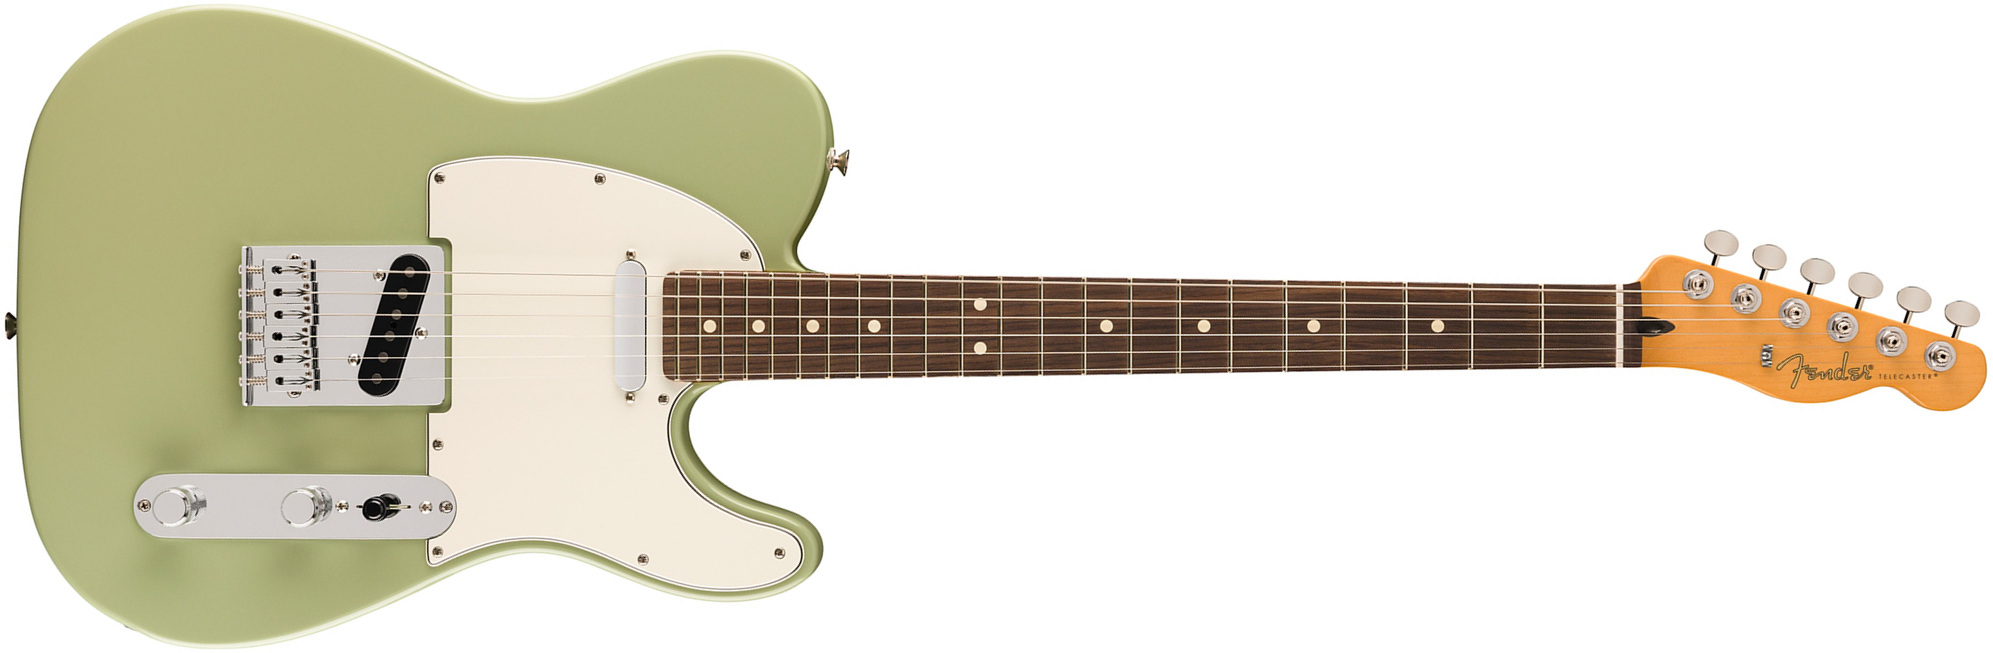 Fender Tele Player Ii Mex Aulne 2s Ht Rw - Birch Green - Televorm elektrische gitaar - Main picture